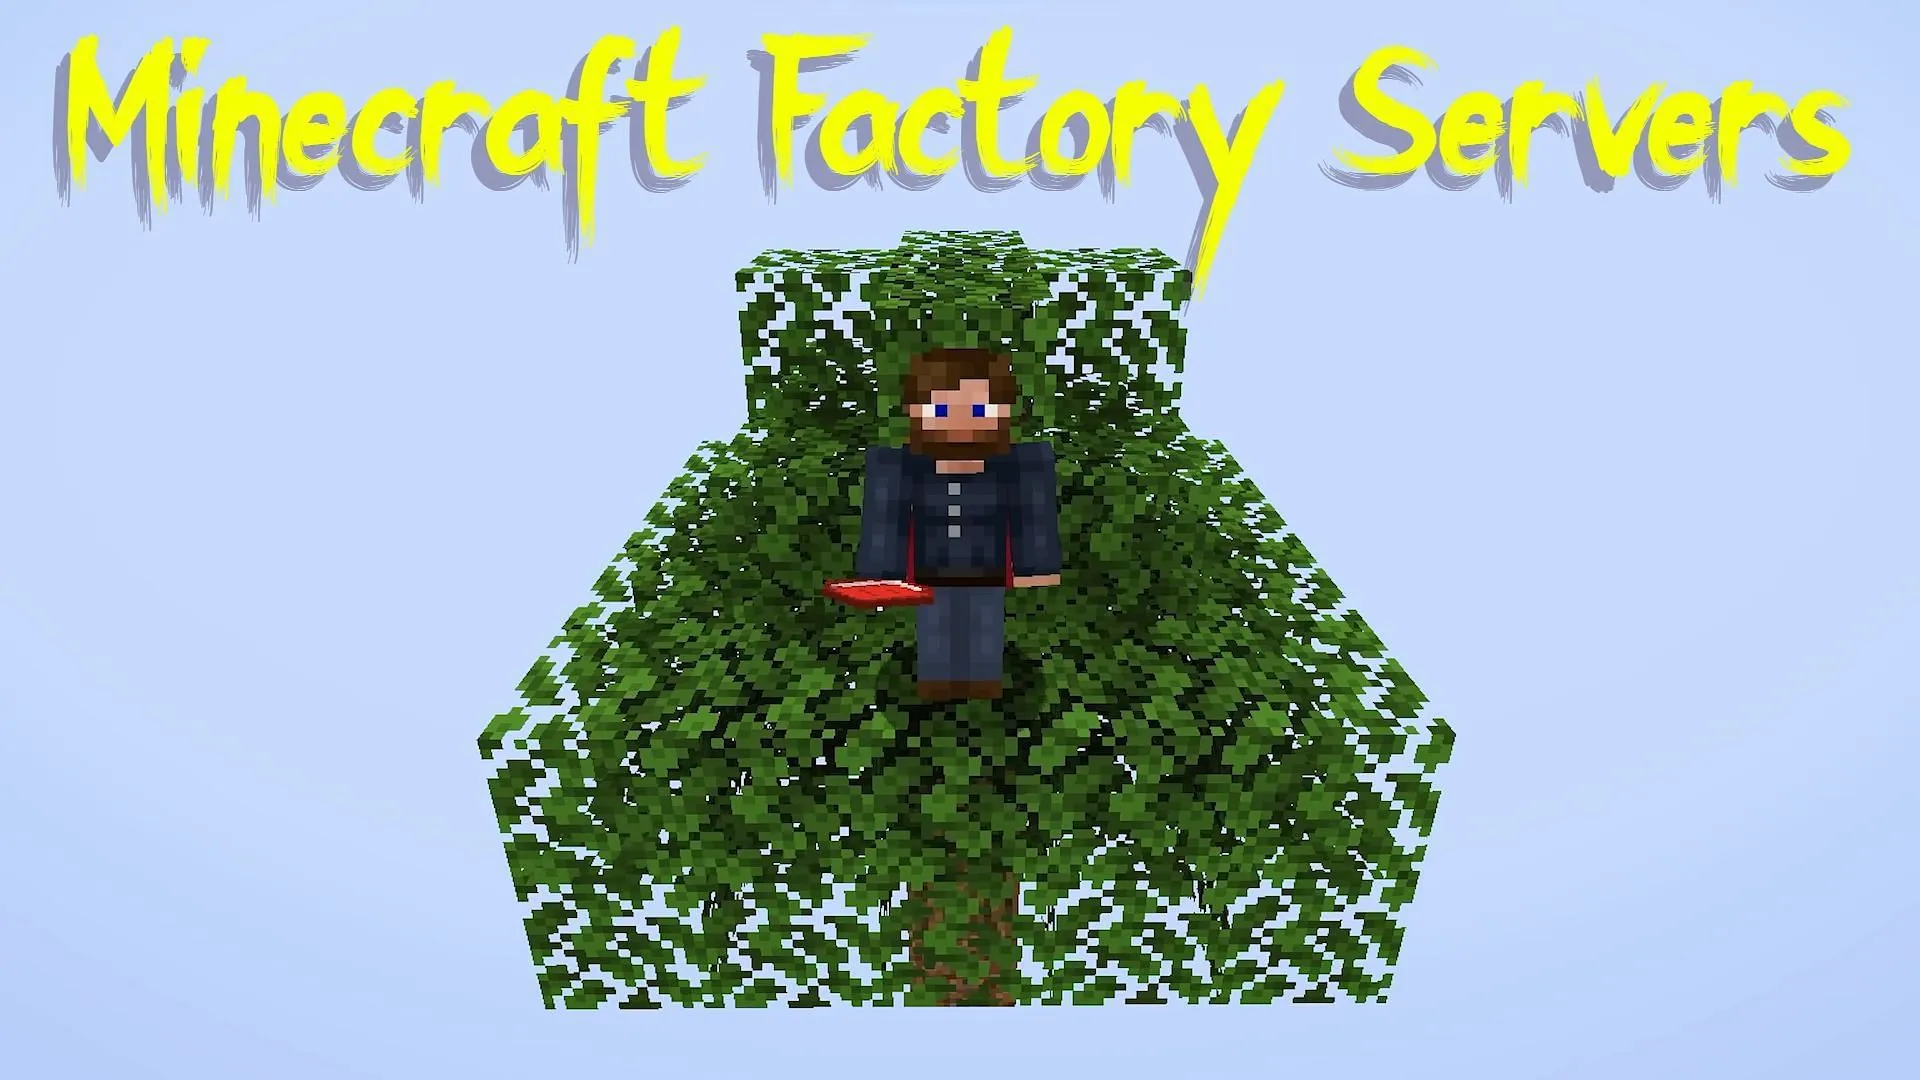 3 server game Minecraft dành cho những ai thích xây dựng nhà máy